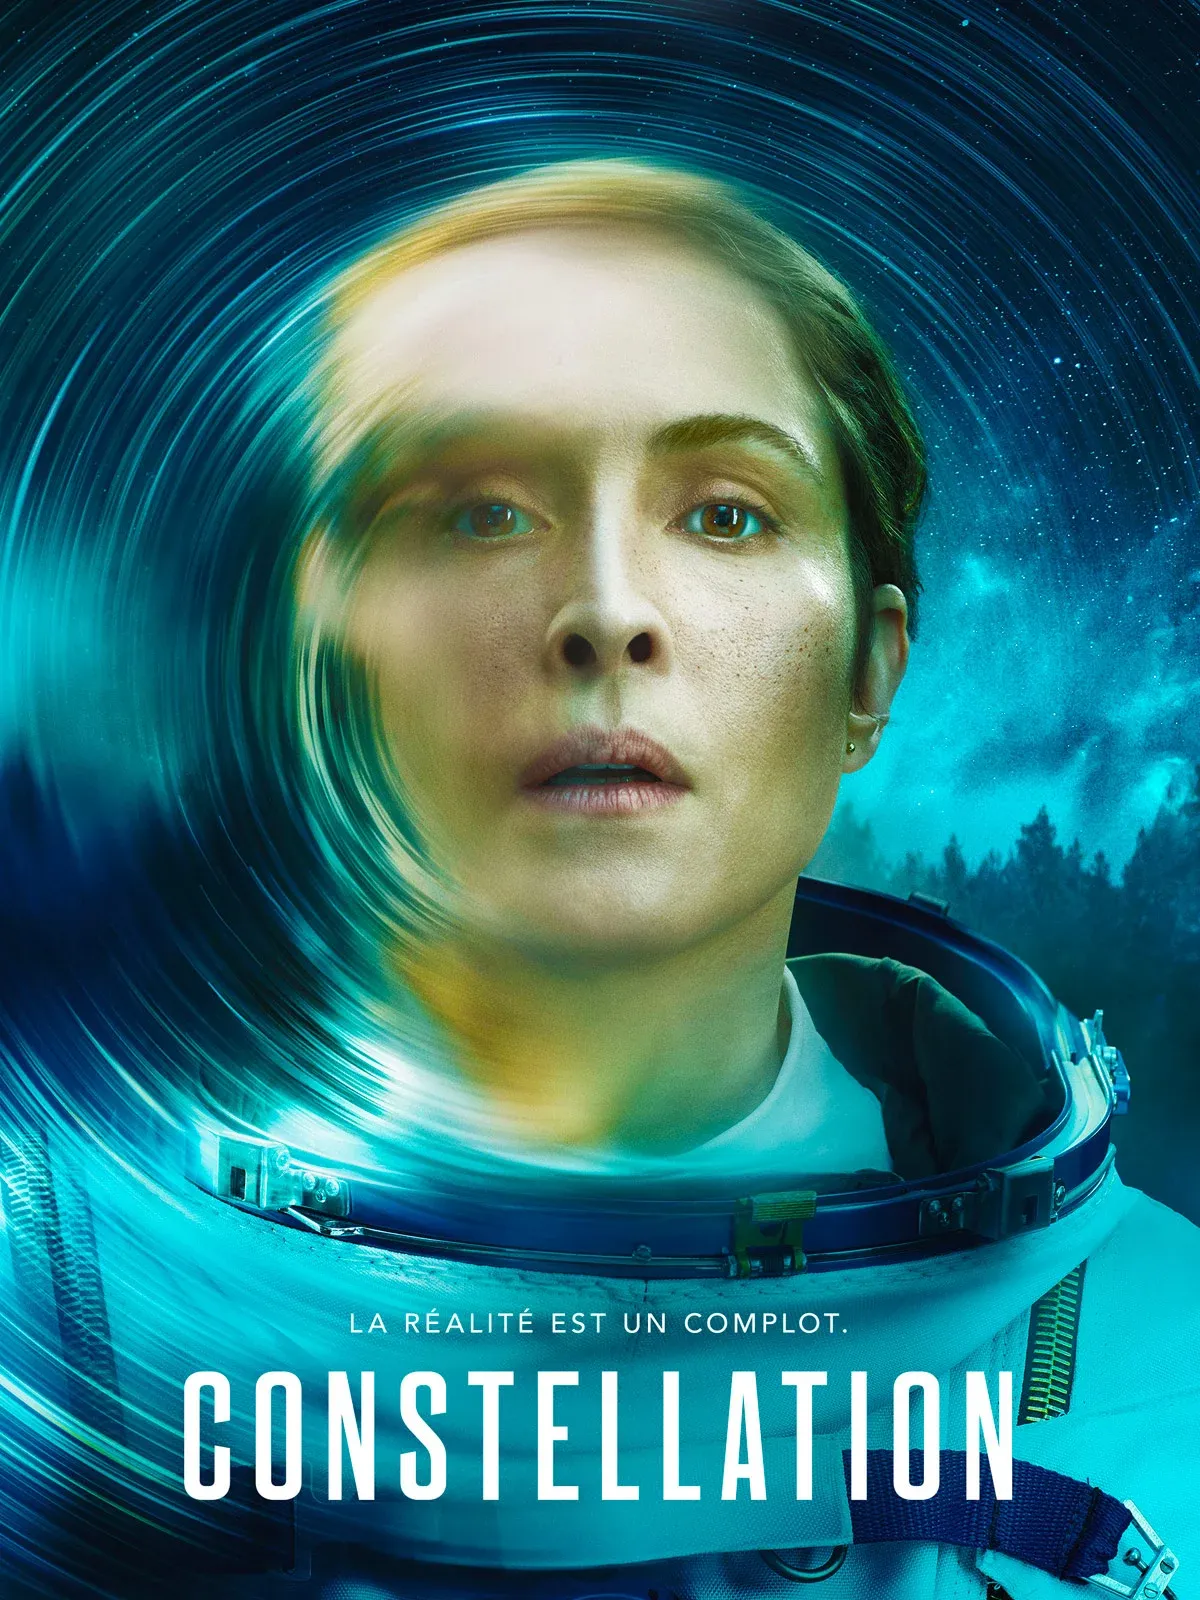 Constellation (Saison épisodes) réalité n'est-elle qu'une imagination